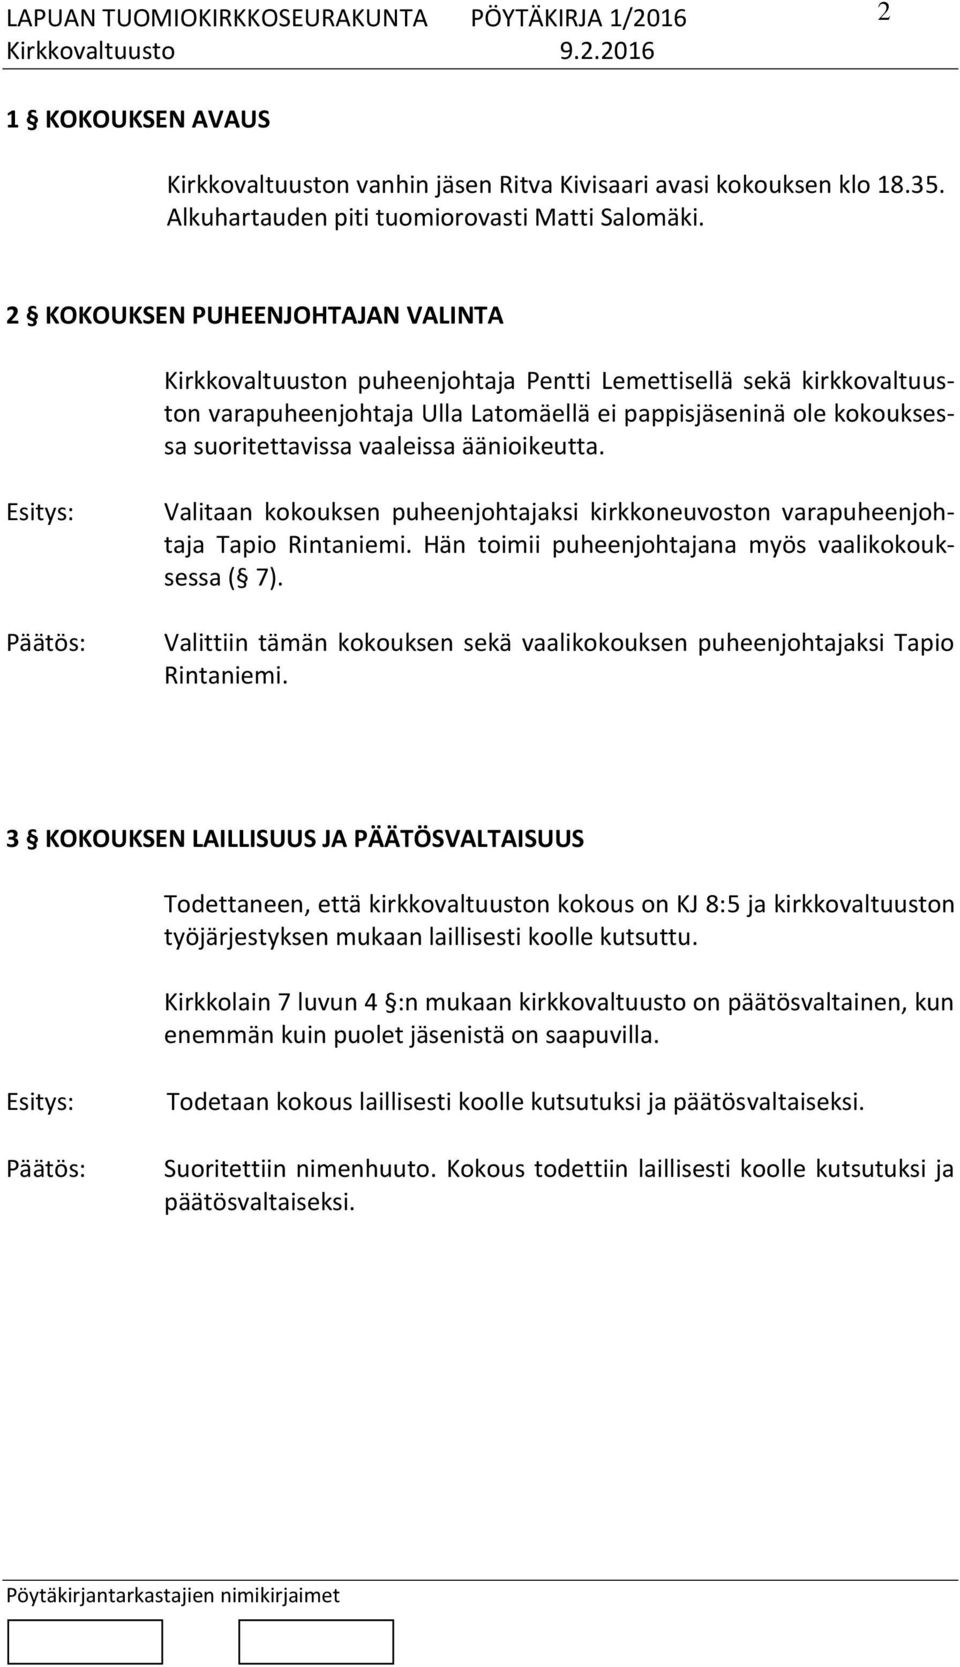 vaaleissa äänioikeutta. Valitaan kokouksen puheenjohtajaksi kirkkoneuvoston varapuheenjohtaja Tapio Rintaniemi. Hän toimii puheenjohtajana myös vaalikokouksessa ( 7).